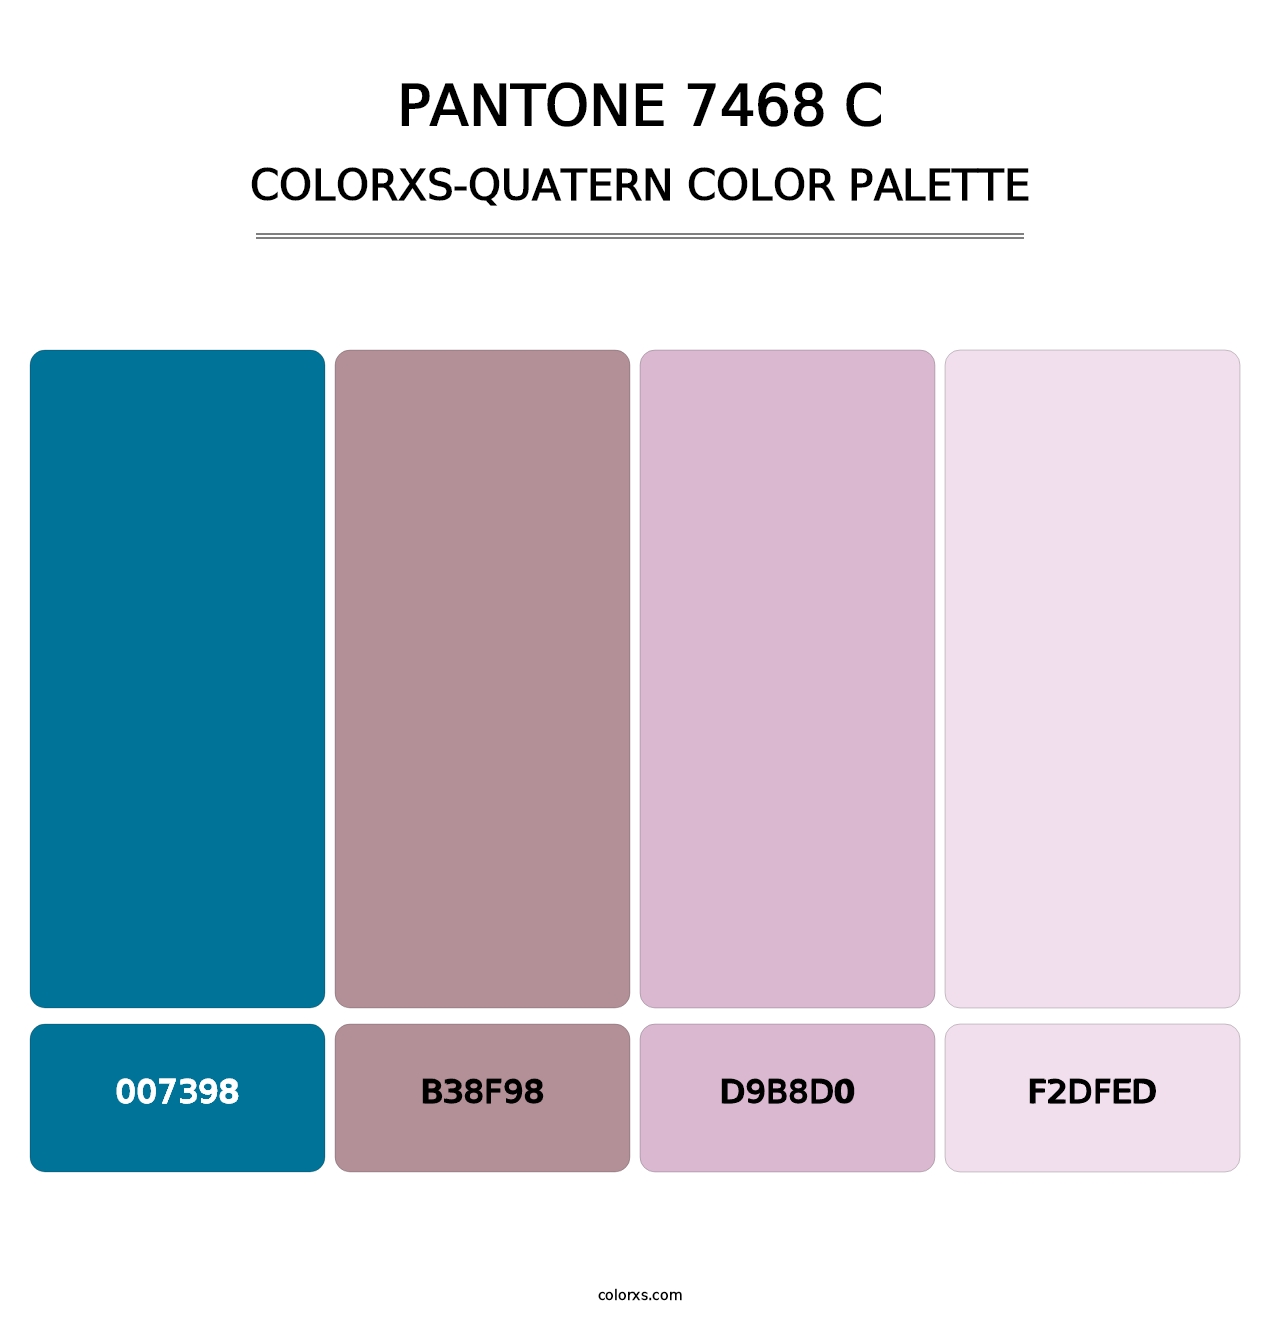 PANTONE 7468 C - Colorxs Quatern Palette